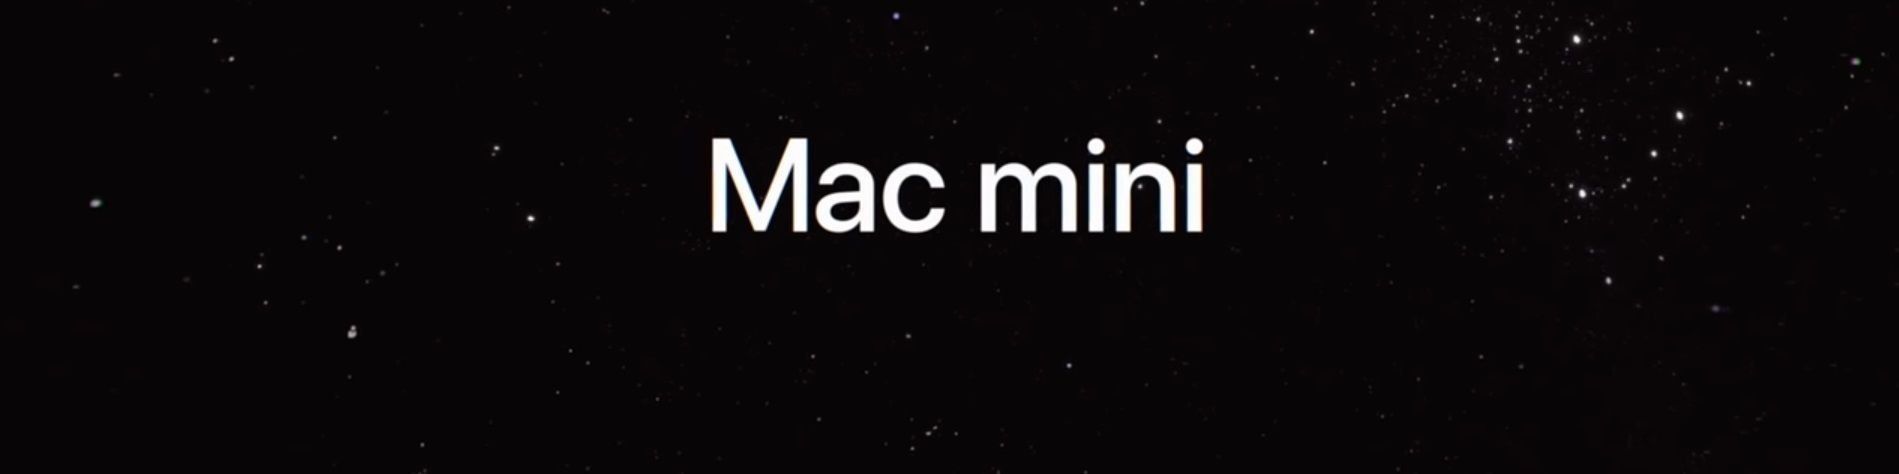 Apple Mac mini 2018 - avantages et inconvénients